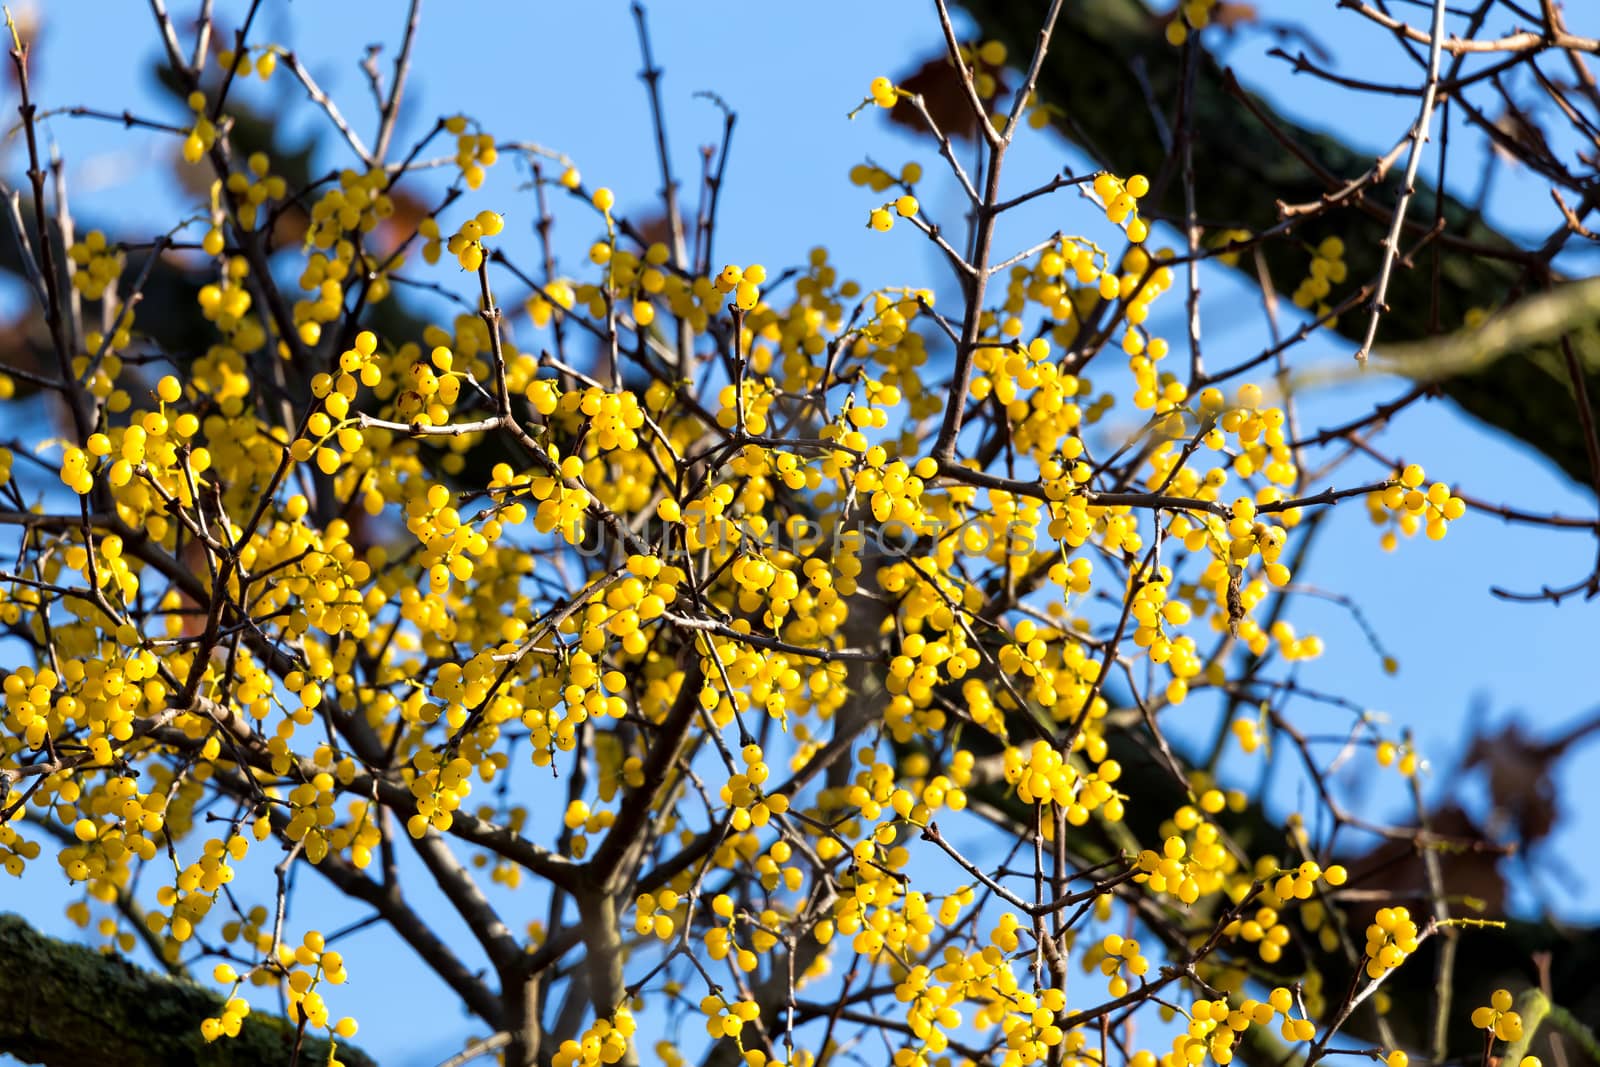 Yellow loranthus berris (Loranthus europaeus)